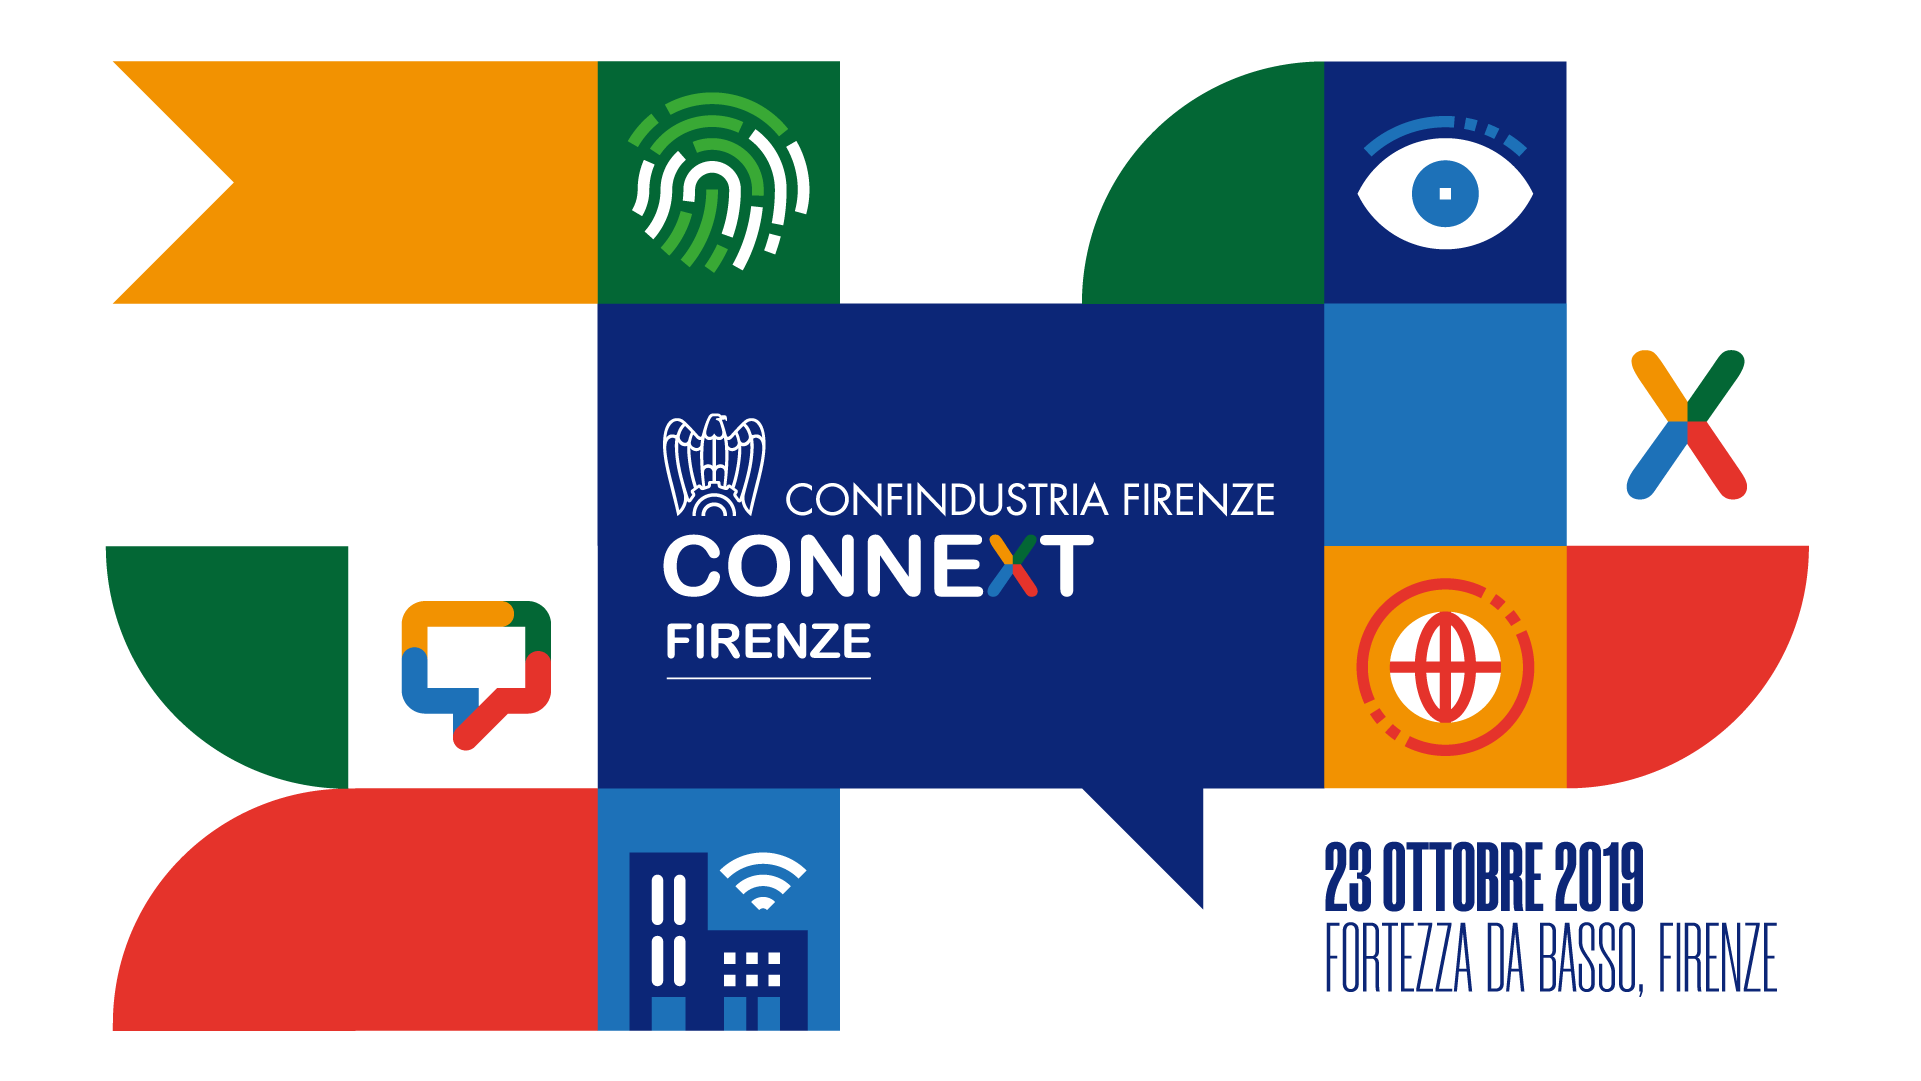 Connext Firenze, torna il B2B più conosciuto della Toscana